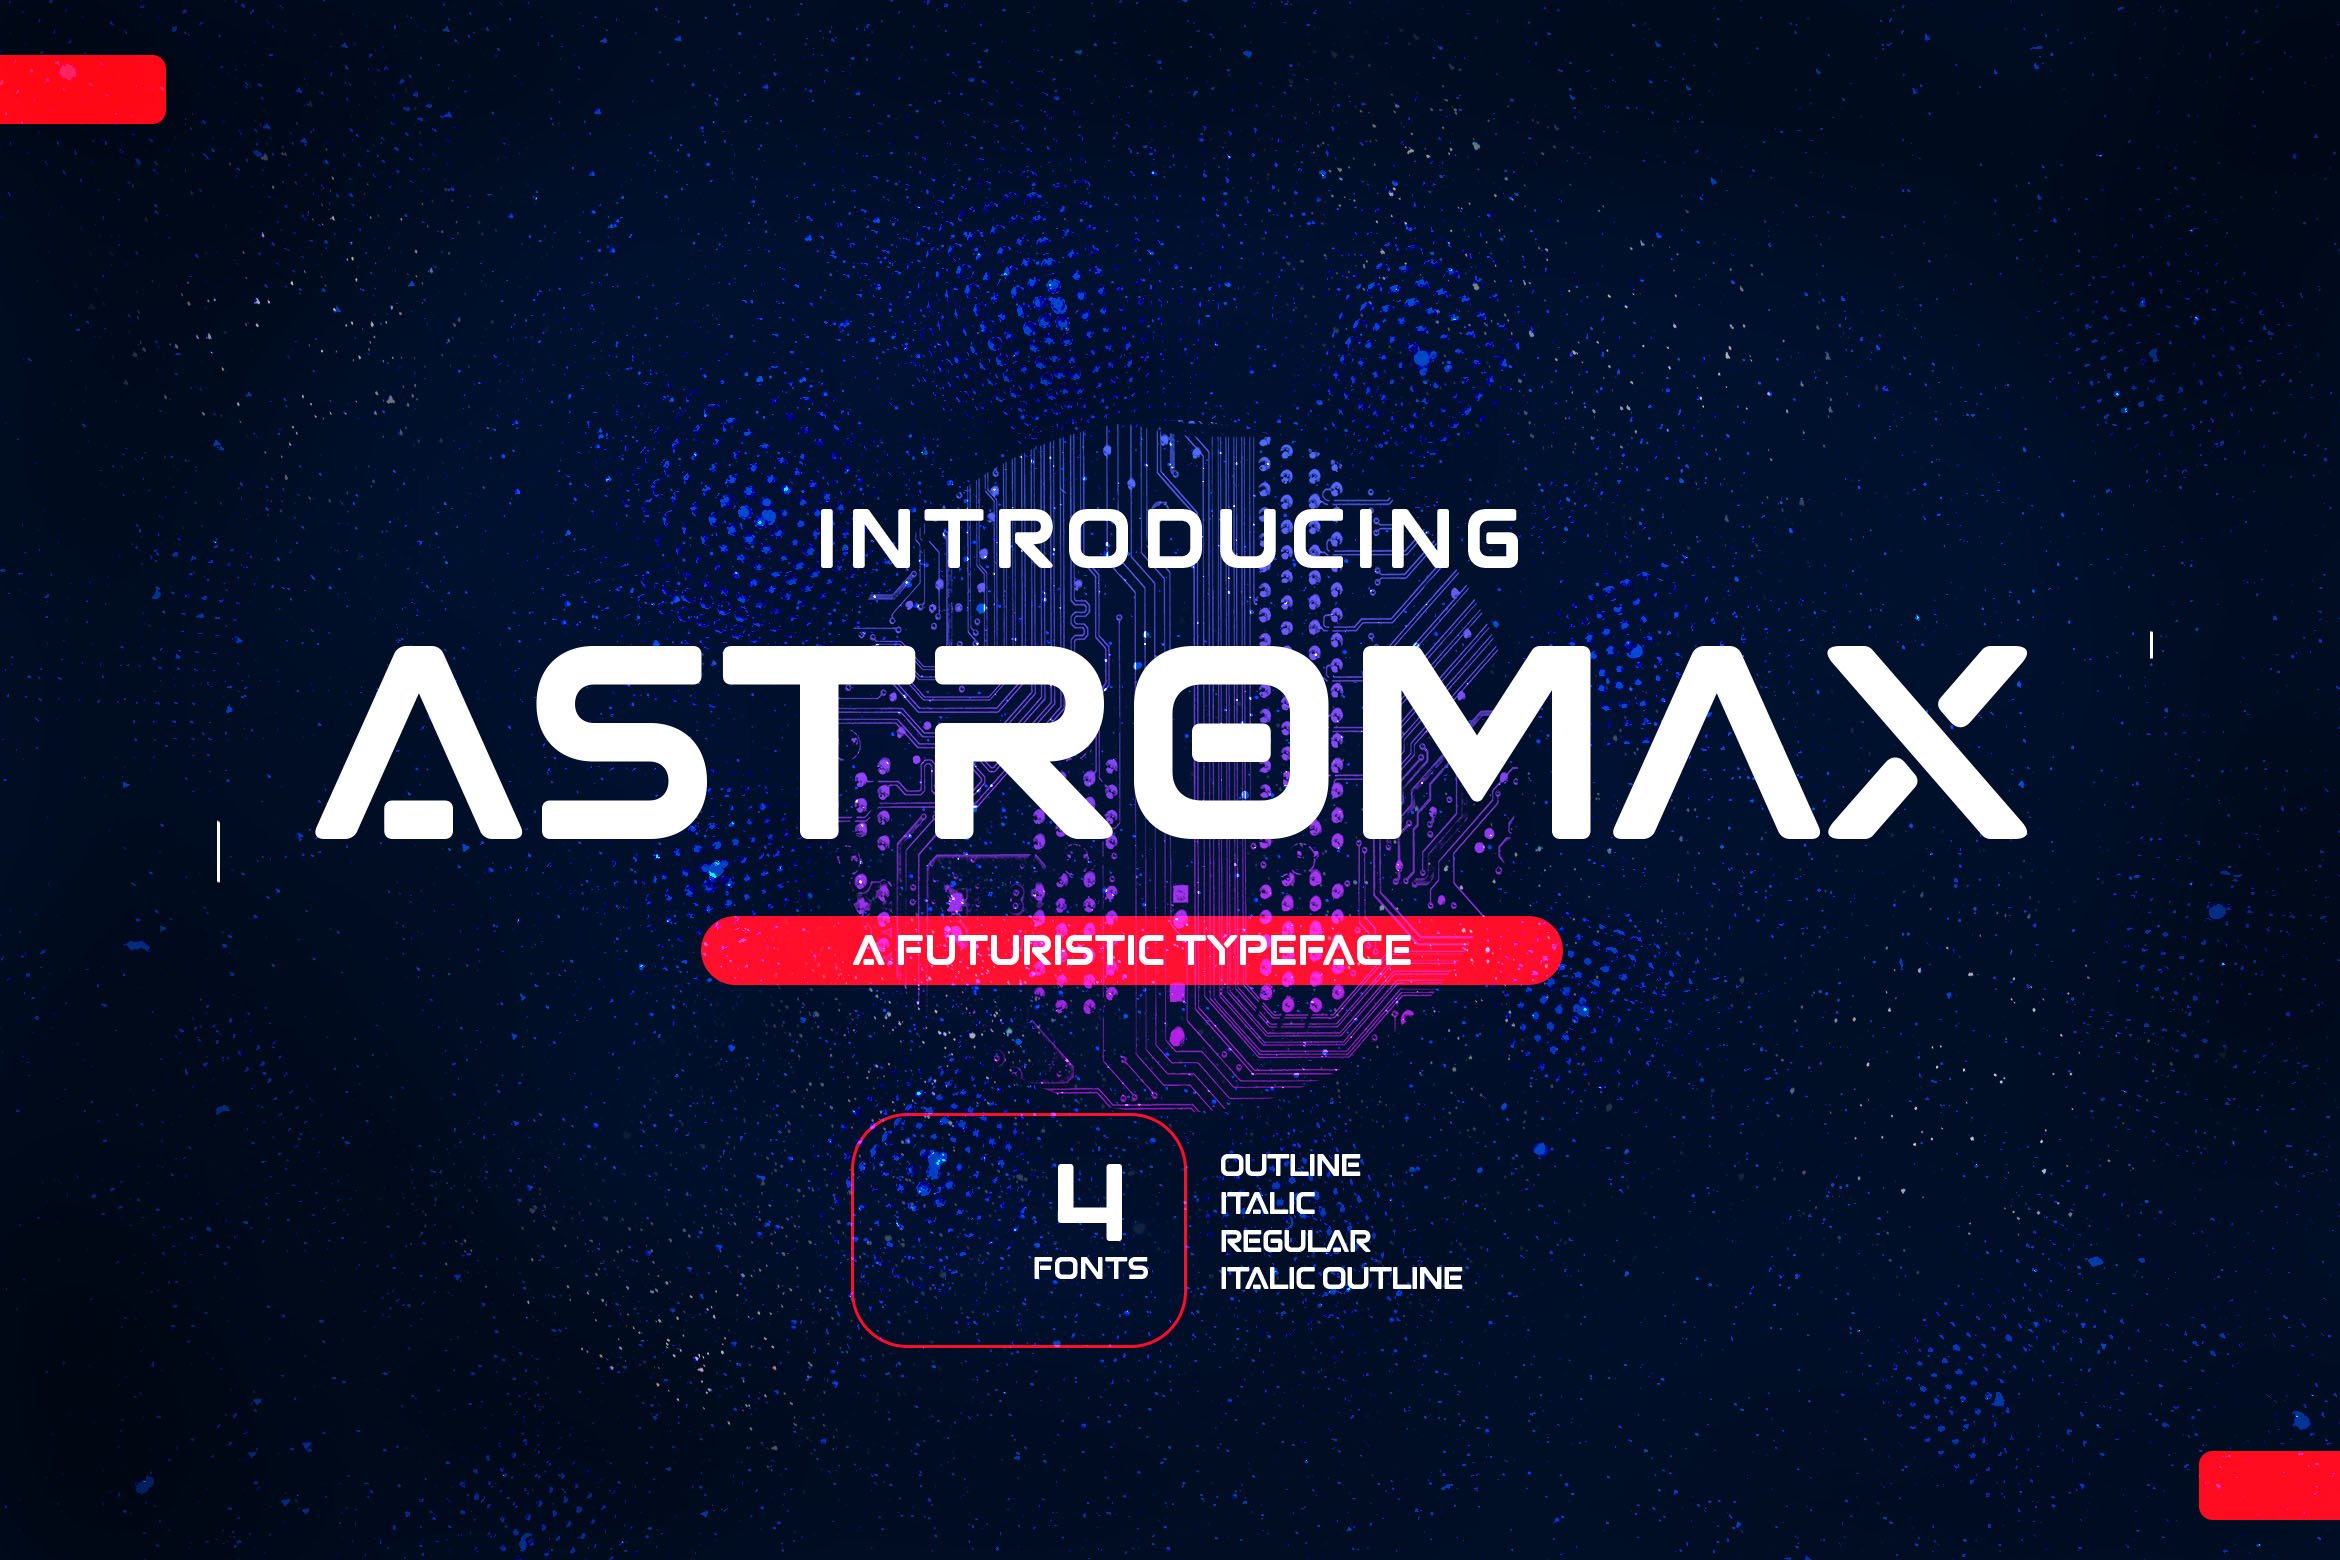 Astromax - A Futuristic Typeface cover image.